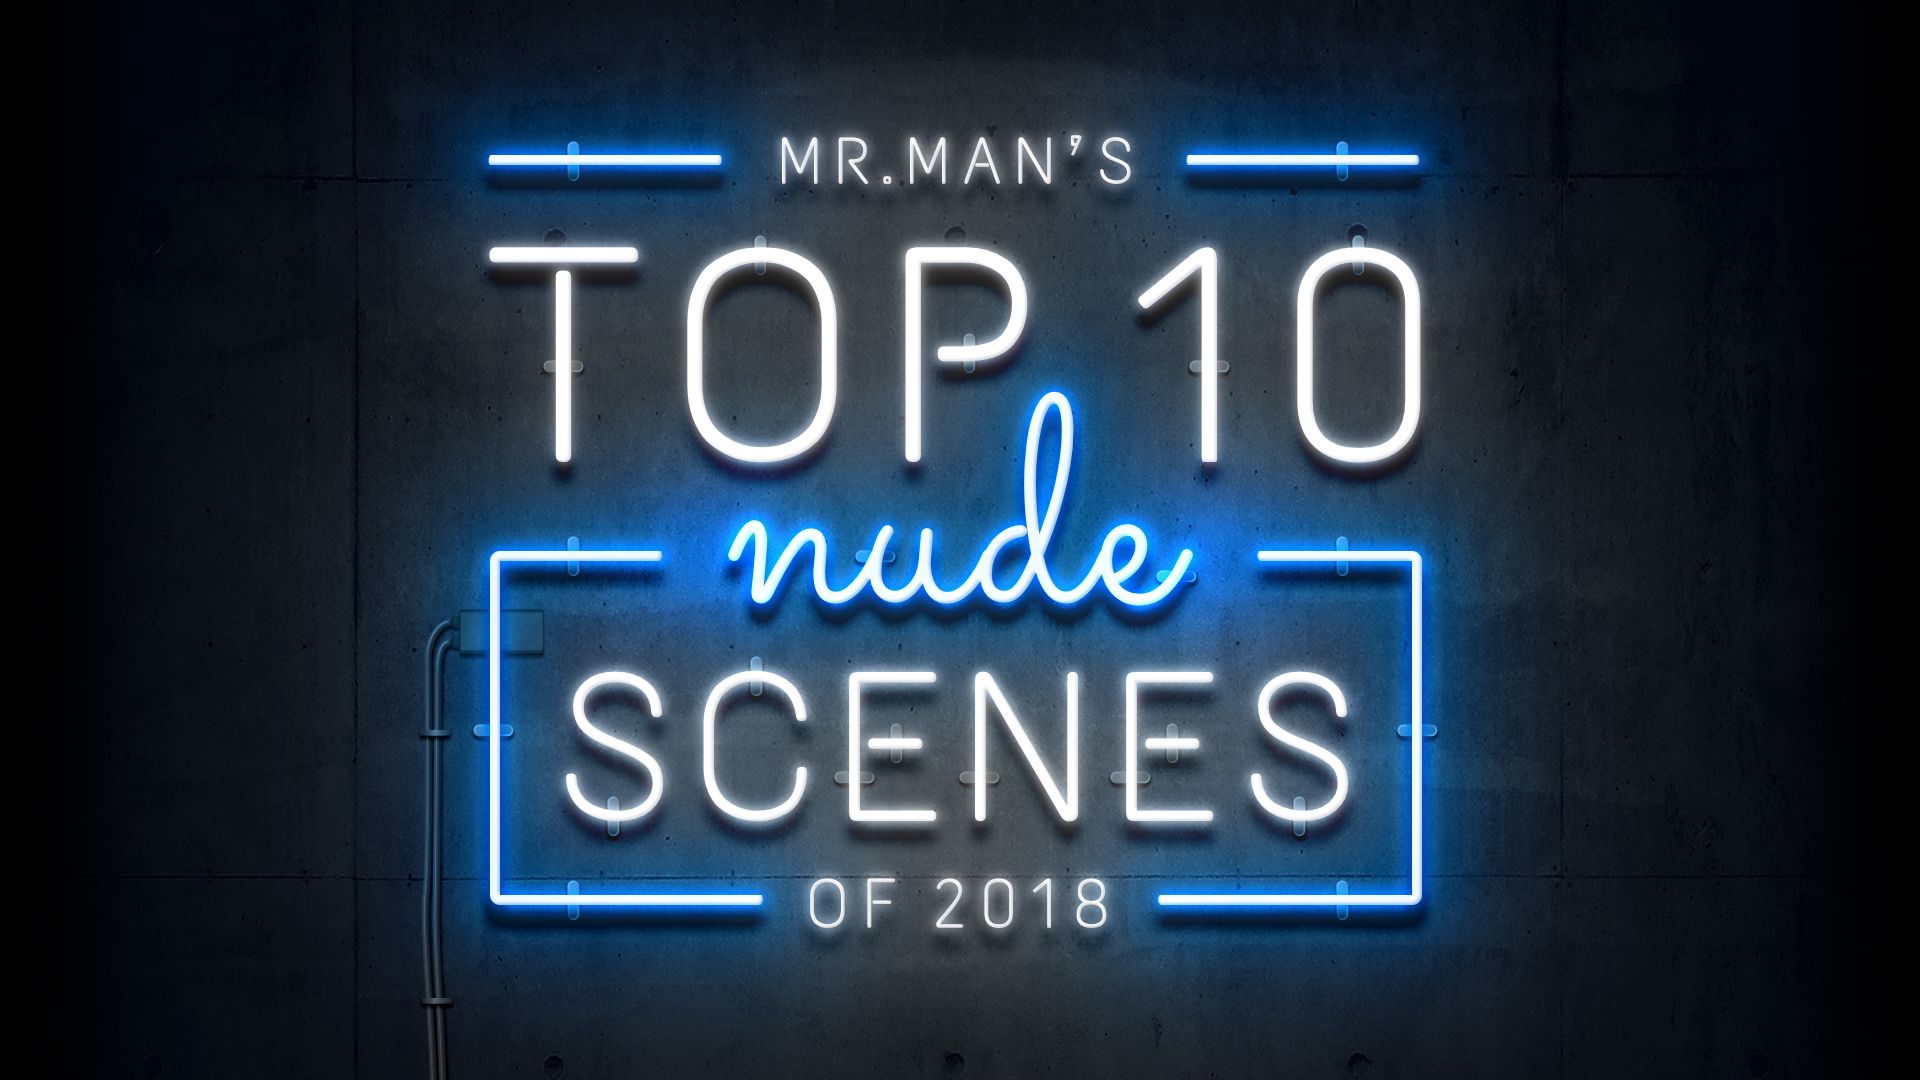 Mr. Man's Top 10 Nude Scenes of 2018